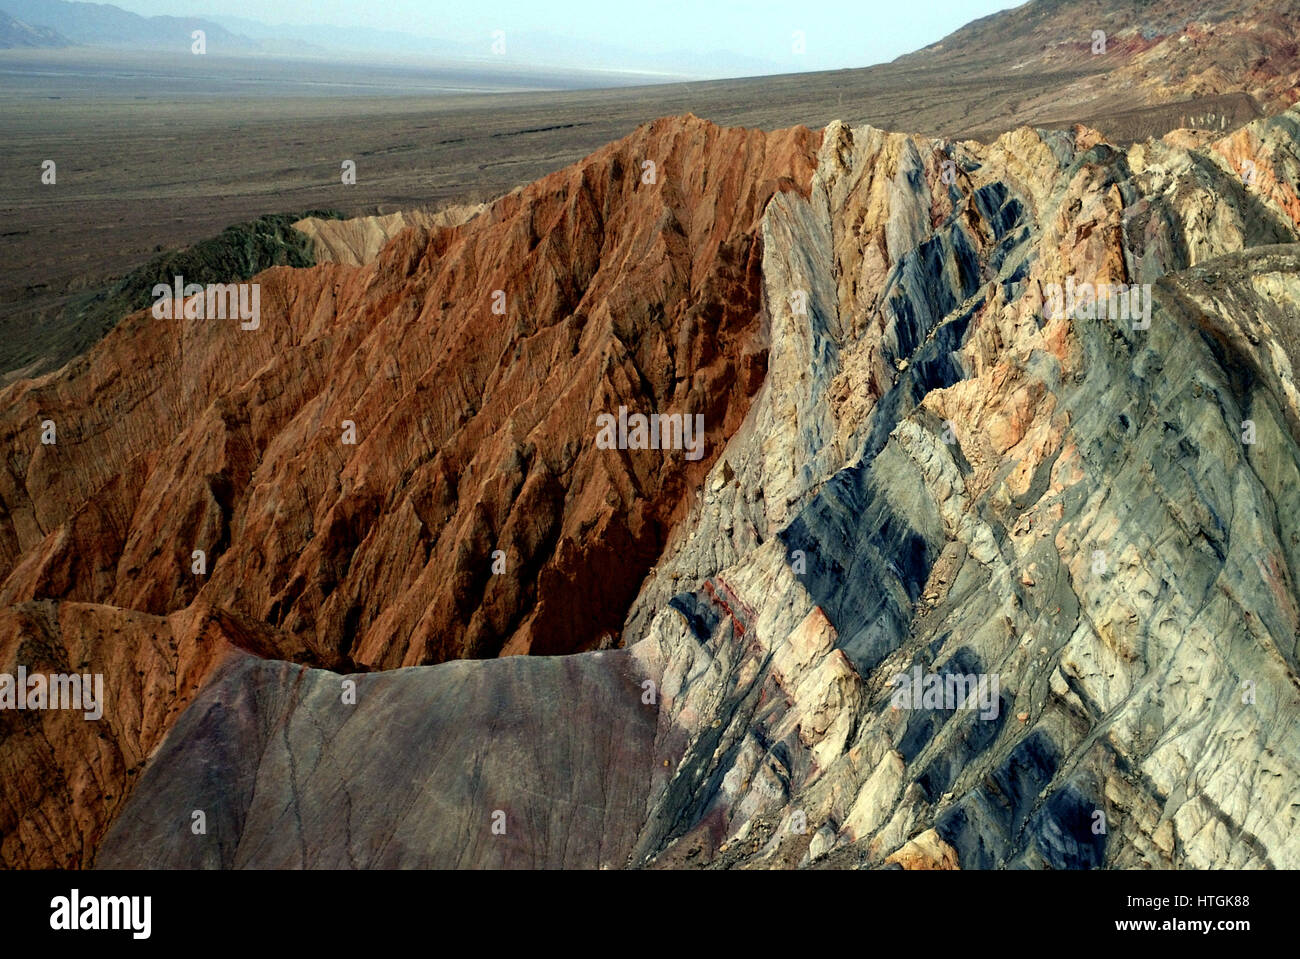 Haixi. 11. März 2017. Foto aufgenommen am 11. März 2017 zeigt bunte Felsen eines Berges in der Nähe Stadtteil Da Qaidam (auch bekannt als Dachaidan) in Mongolisch-tibetischen autonomen Präfektur von Haixi, Nordwesten Chinas Provinz Qinghai. Bildnachweis: Wang Bo/Xinhua/Alamy Live-Nachrichten Stockfoto